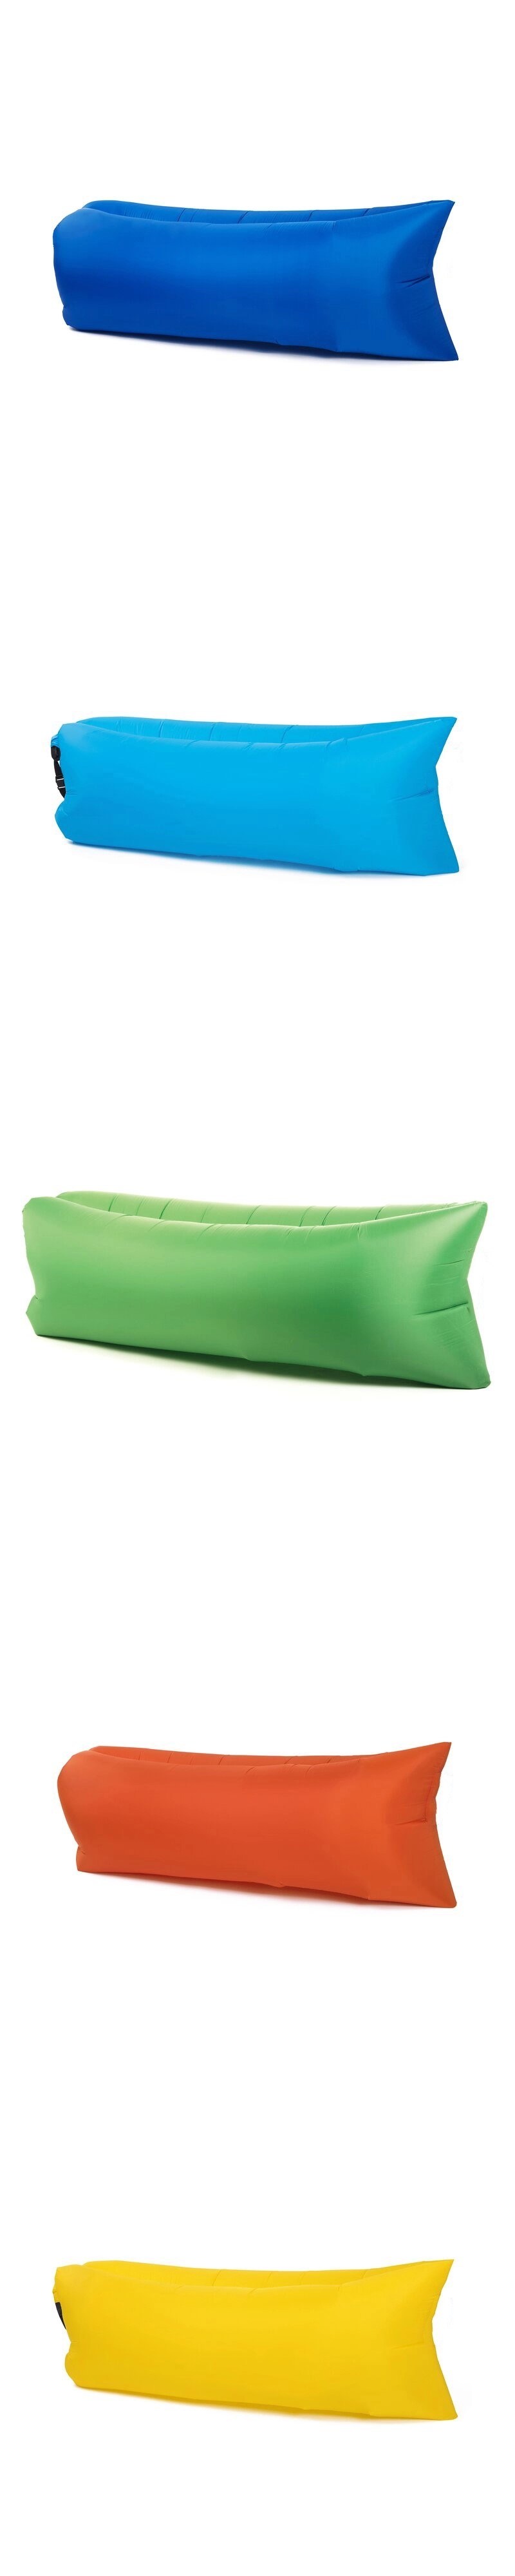 Lazy Sofa Sleeping Camping Sofa Inflatable Lounger Air Sofa